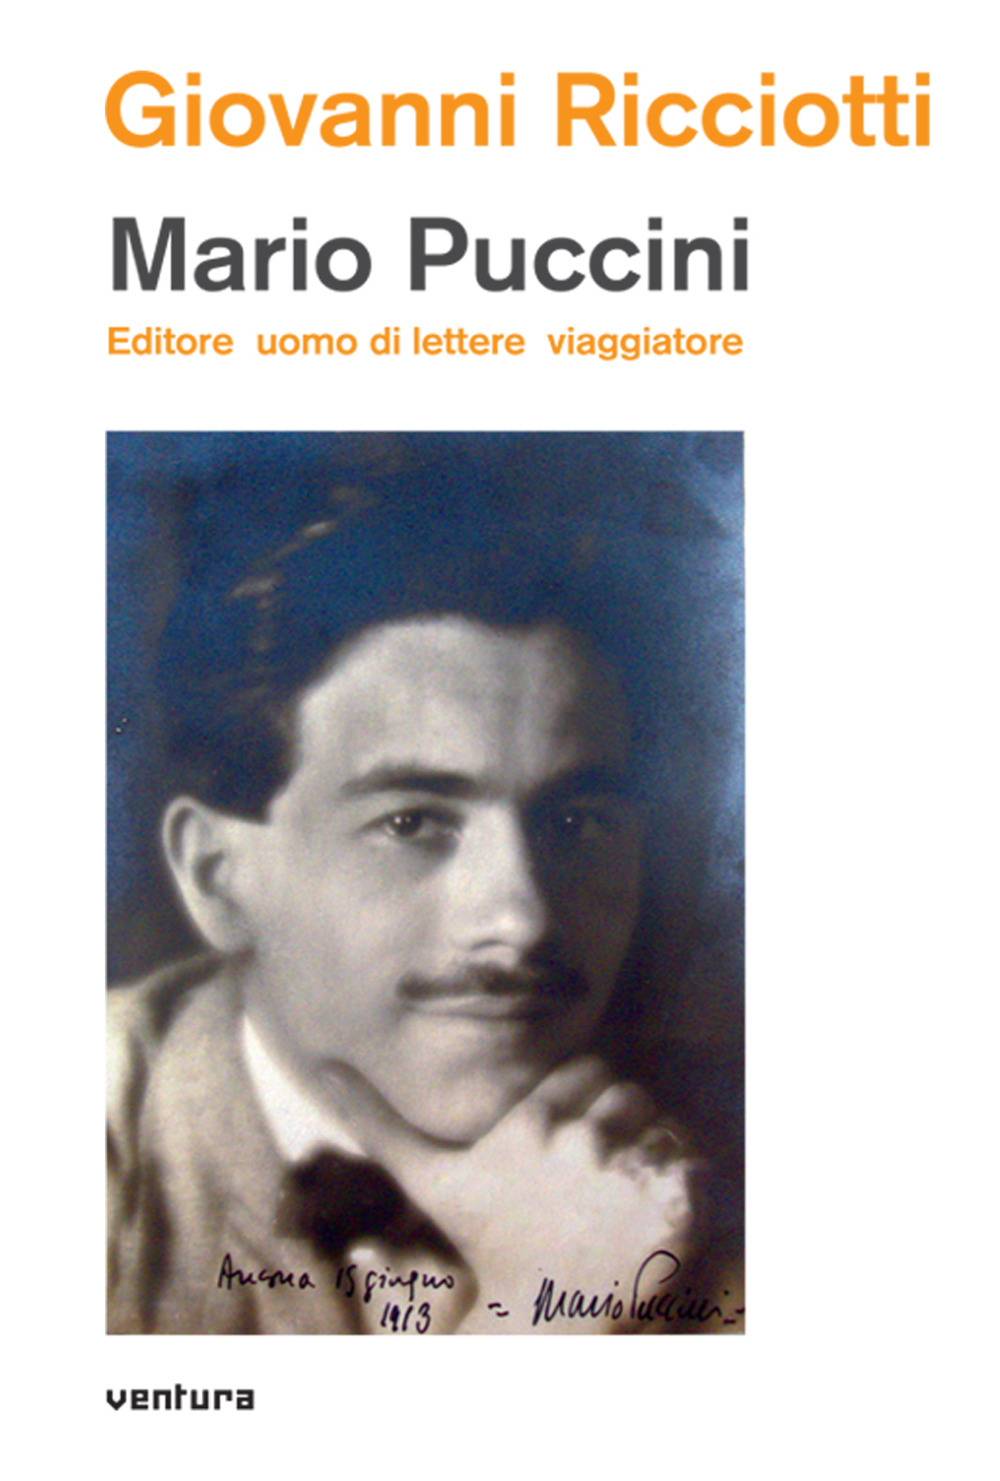 Mario Puccini. Editore uomo di lettere viaggiatore